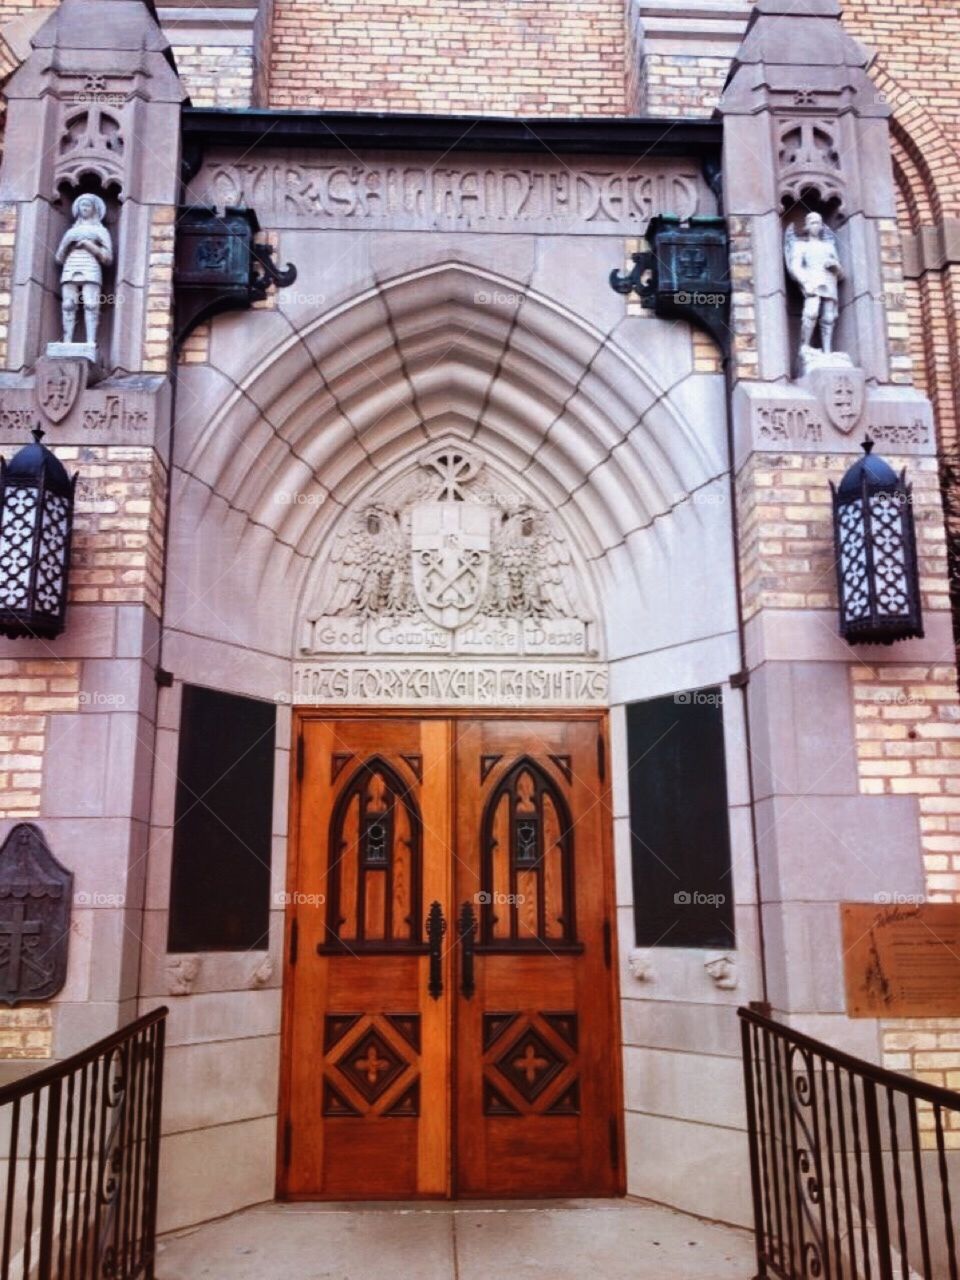 Doorway on Notre Dame campus